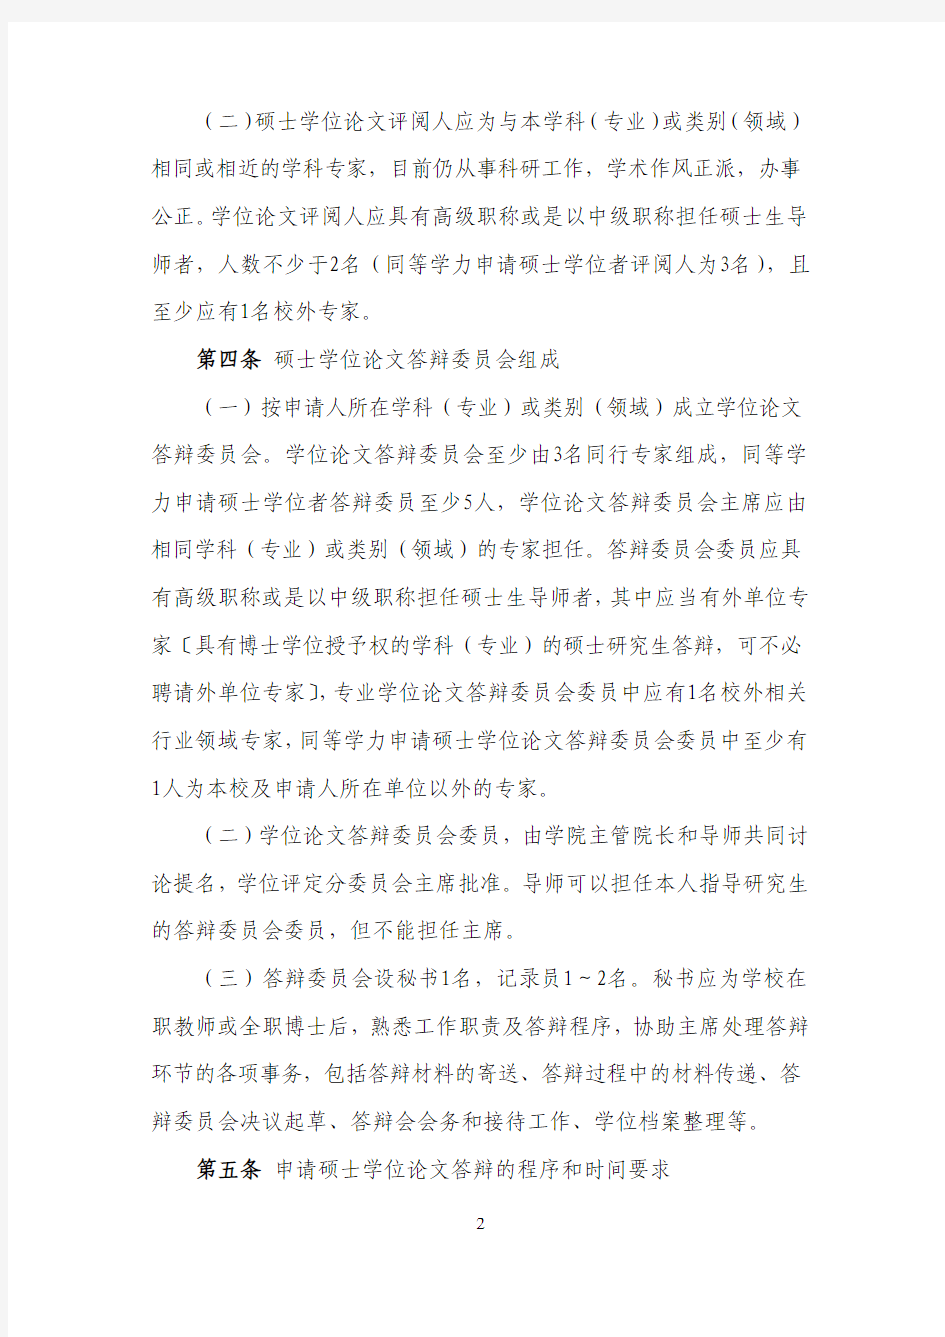 华南理工大学研究生申请学位工作管理办法 (2019 年修订)